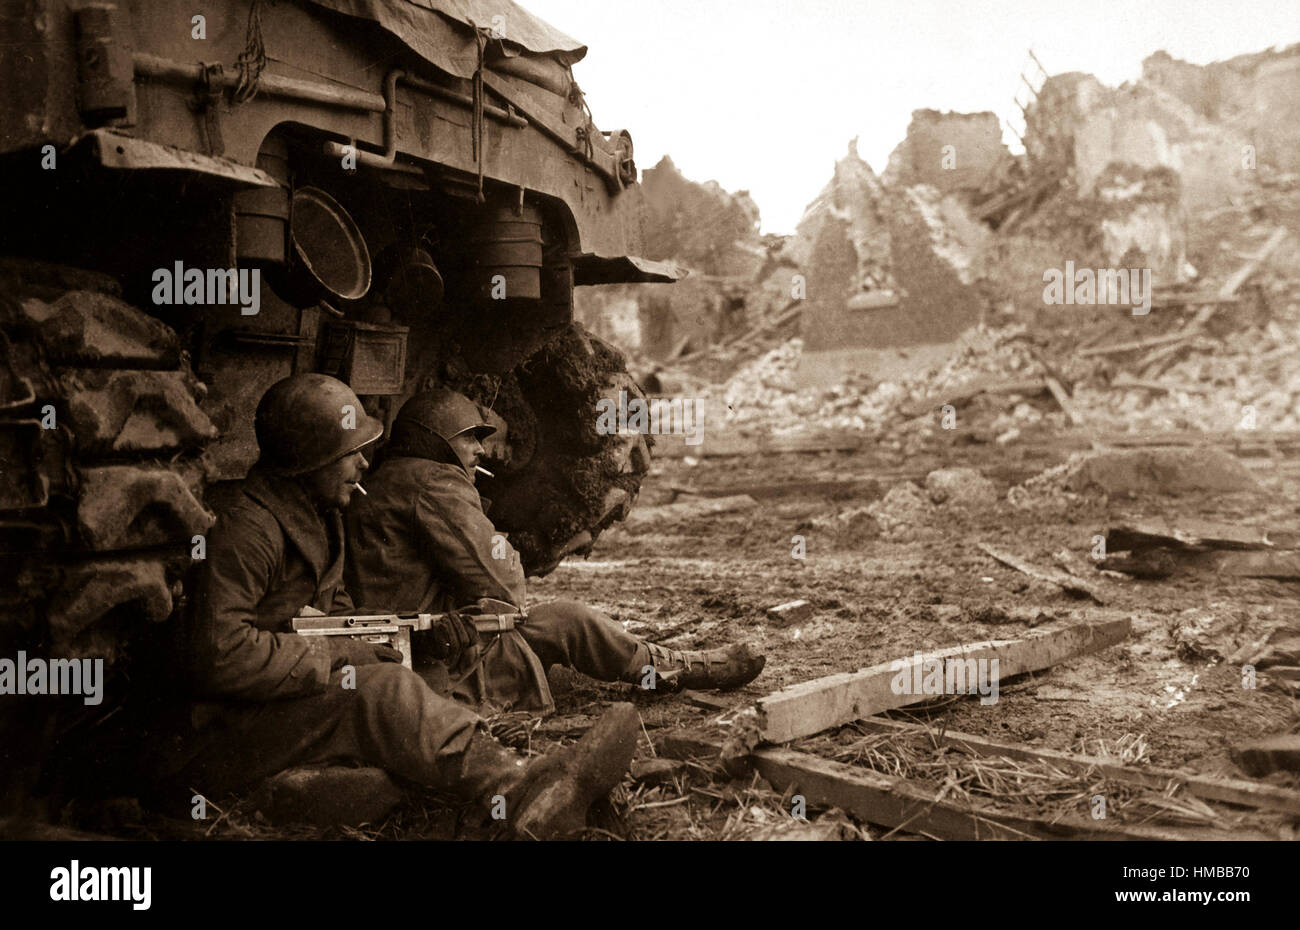 Mit deutschen Schalen schreien overhead suchen amerikanische Infanteristen Zuflucht hinter einem Tank.  Im Hintergrund sind die Ruinen der Stadt von Geich, Deutschland, die noch unter schweren Beschuss zu sehen.  11. Dezember 1944. Roberts. (Armee) NARA-DATEI #: 111-SC-197261 KRIEG & KONFLIKT BUCH #: 1090 Stockfoto